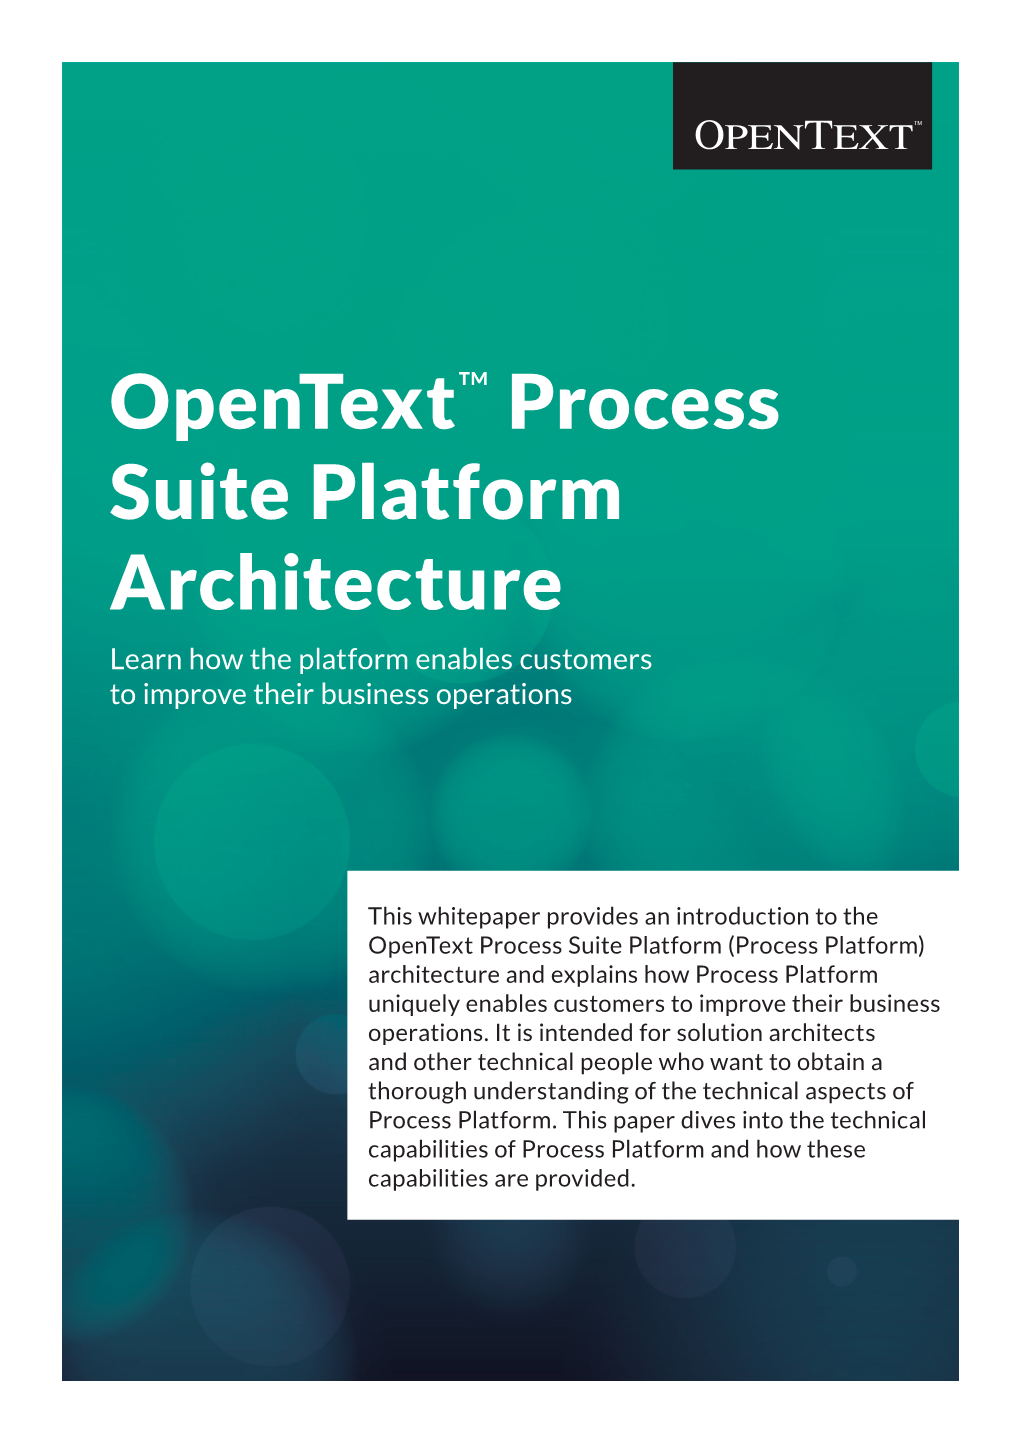 Opentext Process Suite Platform Architecture White Paper